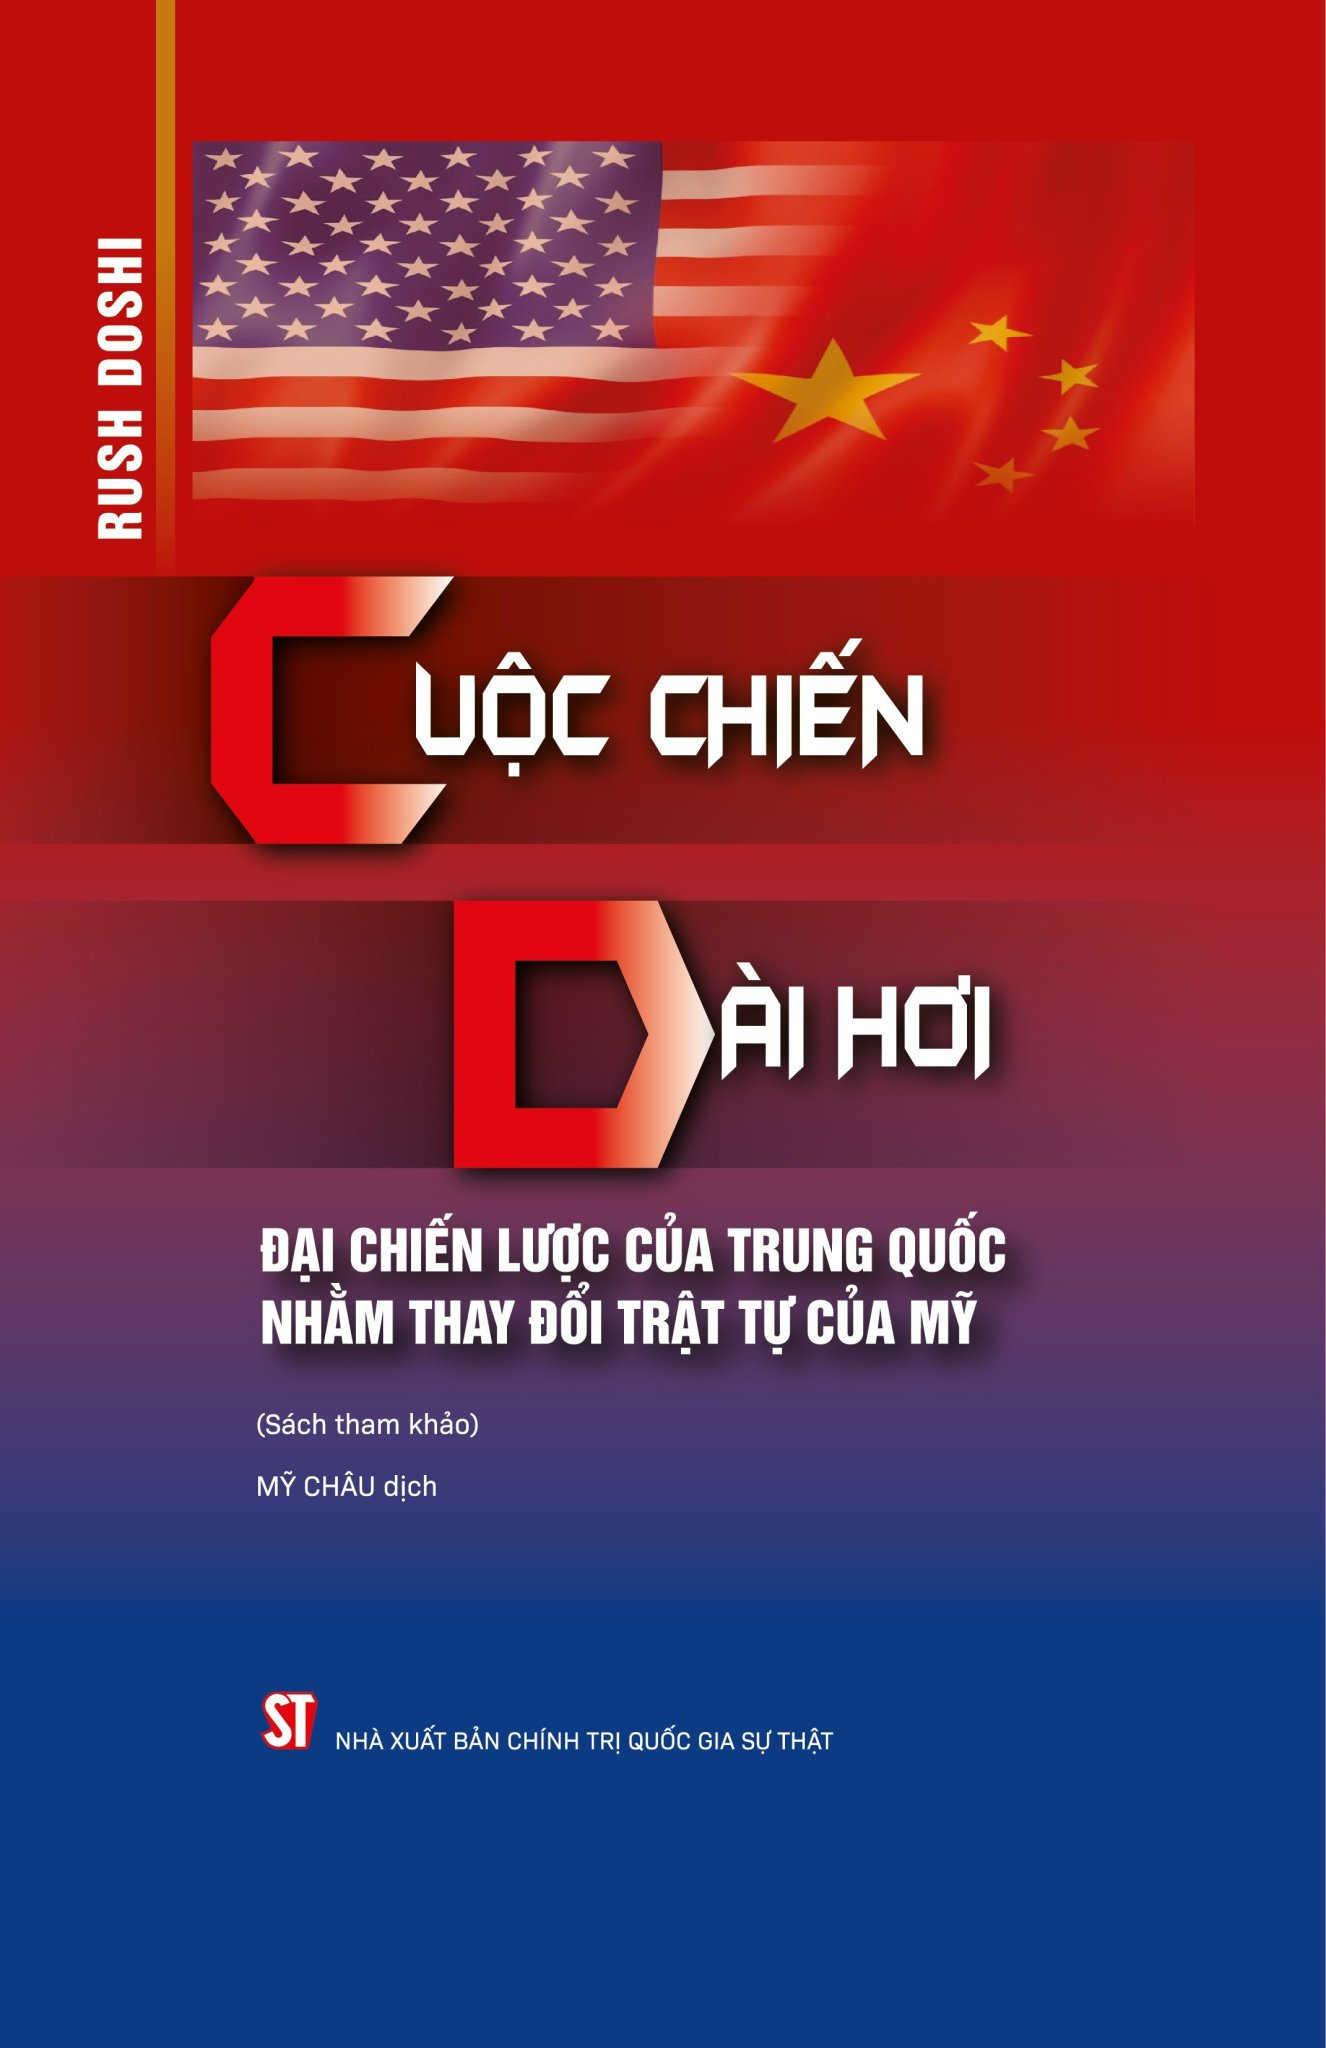 Cuộc chiến dài hơi: Đại chiến lược của Trung Quốc nhằm thay đổi trật tự của Mỹ (Sách tham khảo)